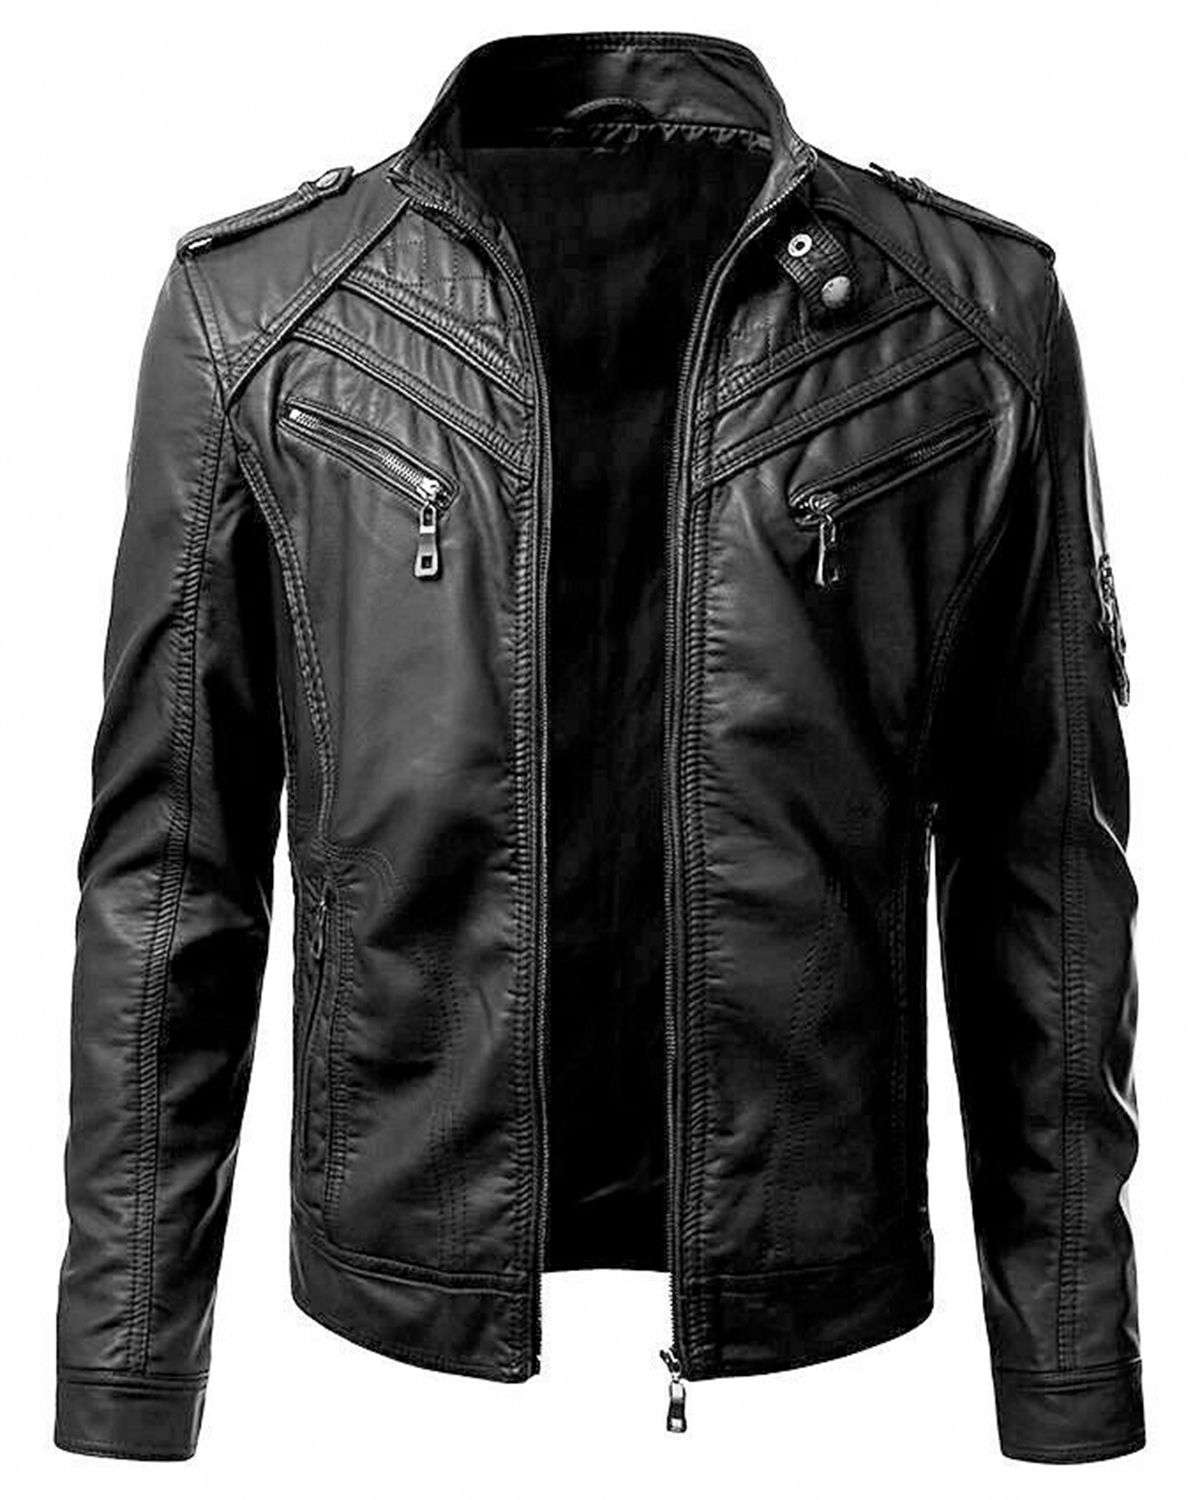 Men’s Black Slim Fit Biker Real Leather Jacket by SCIN